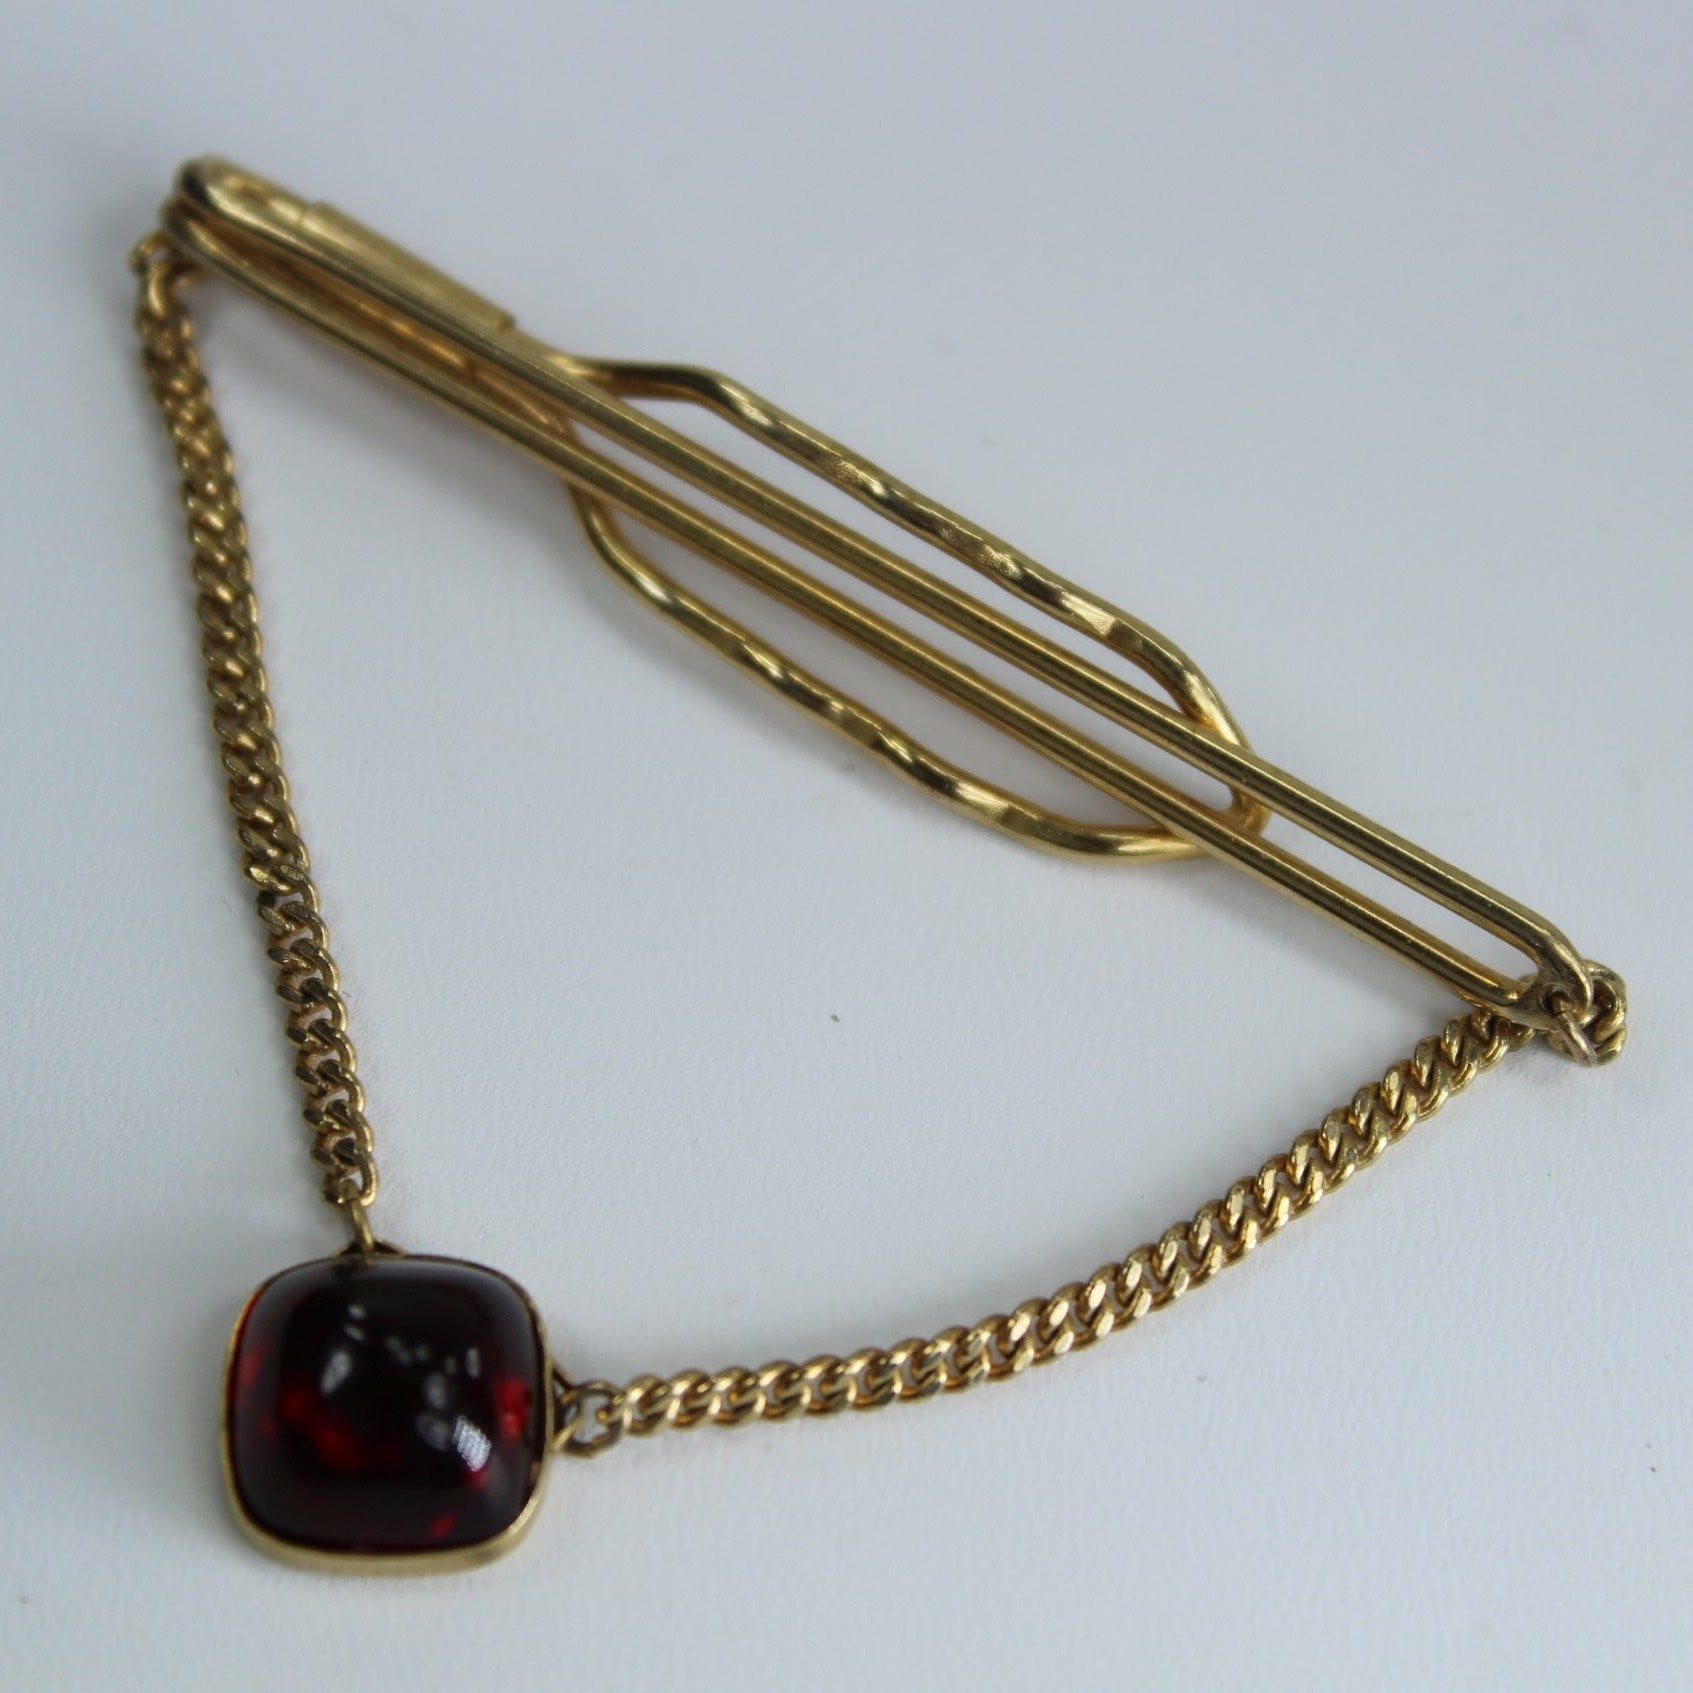 Vintage ANSON Tie Clip Chain Deco Red Stone